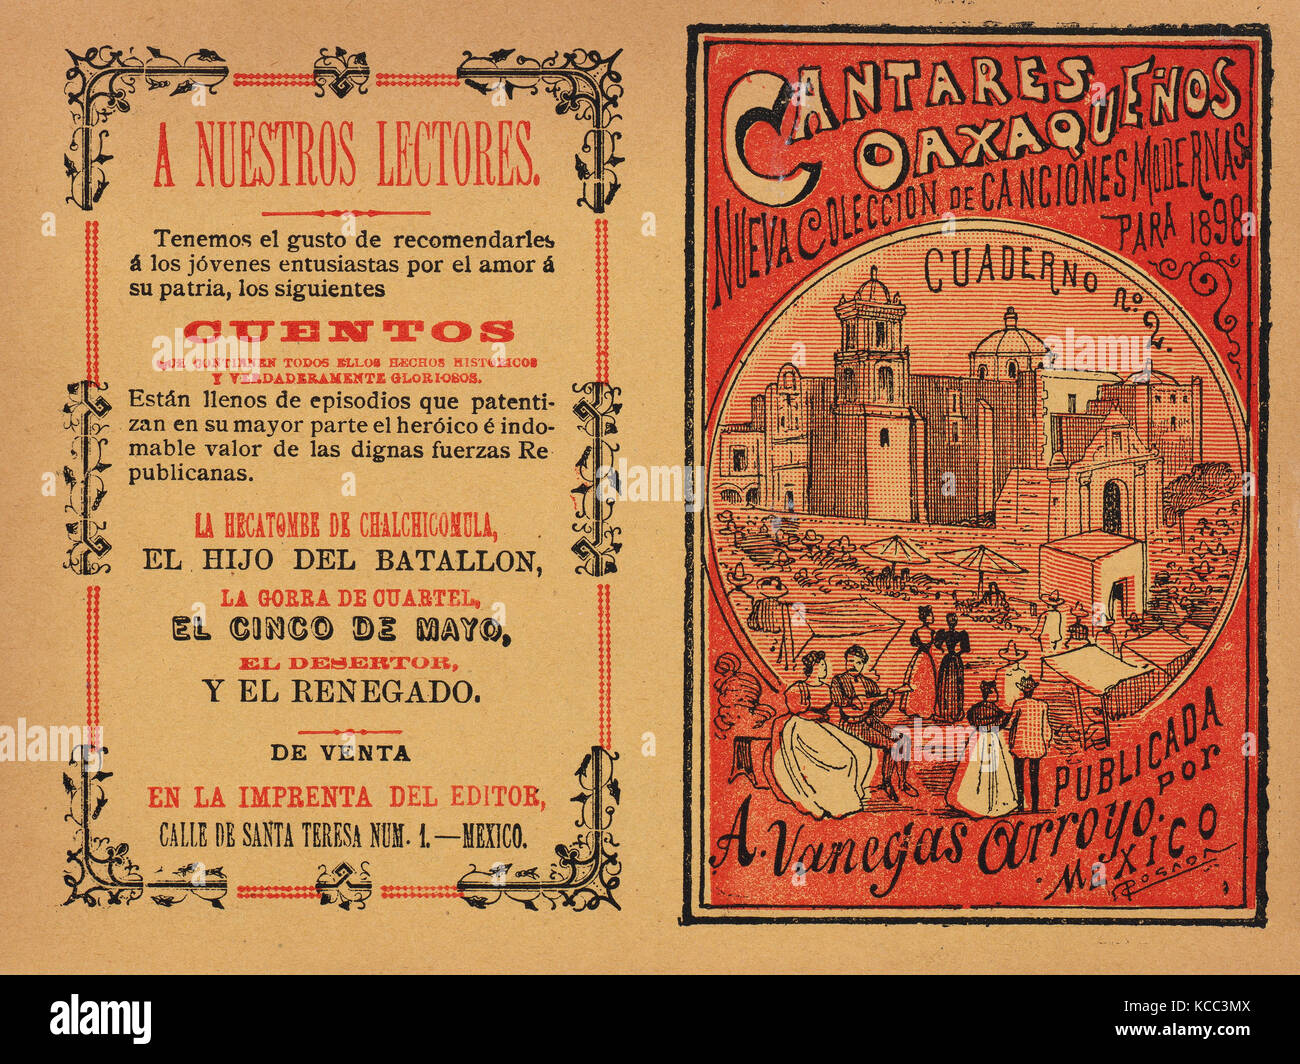 Coperchio per 'Cantares Oaxaquenos: Nueva Coleccion de Canciones Modernas para 1898', coppie camminare a braccetto nella periferia Foto Stock